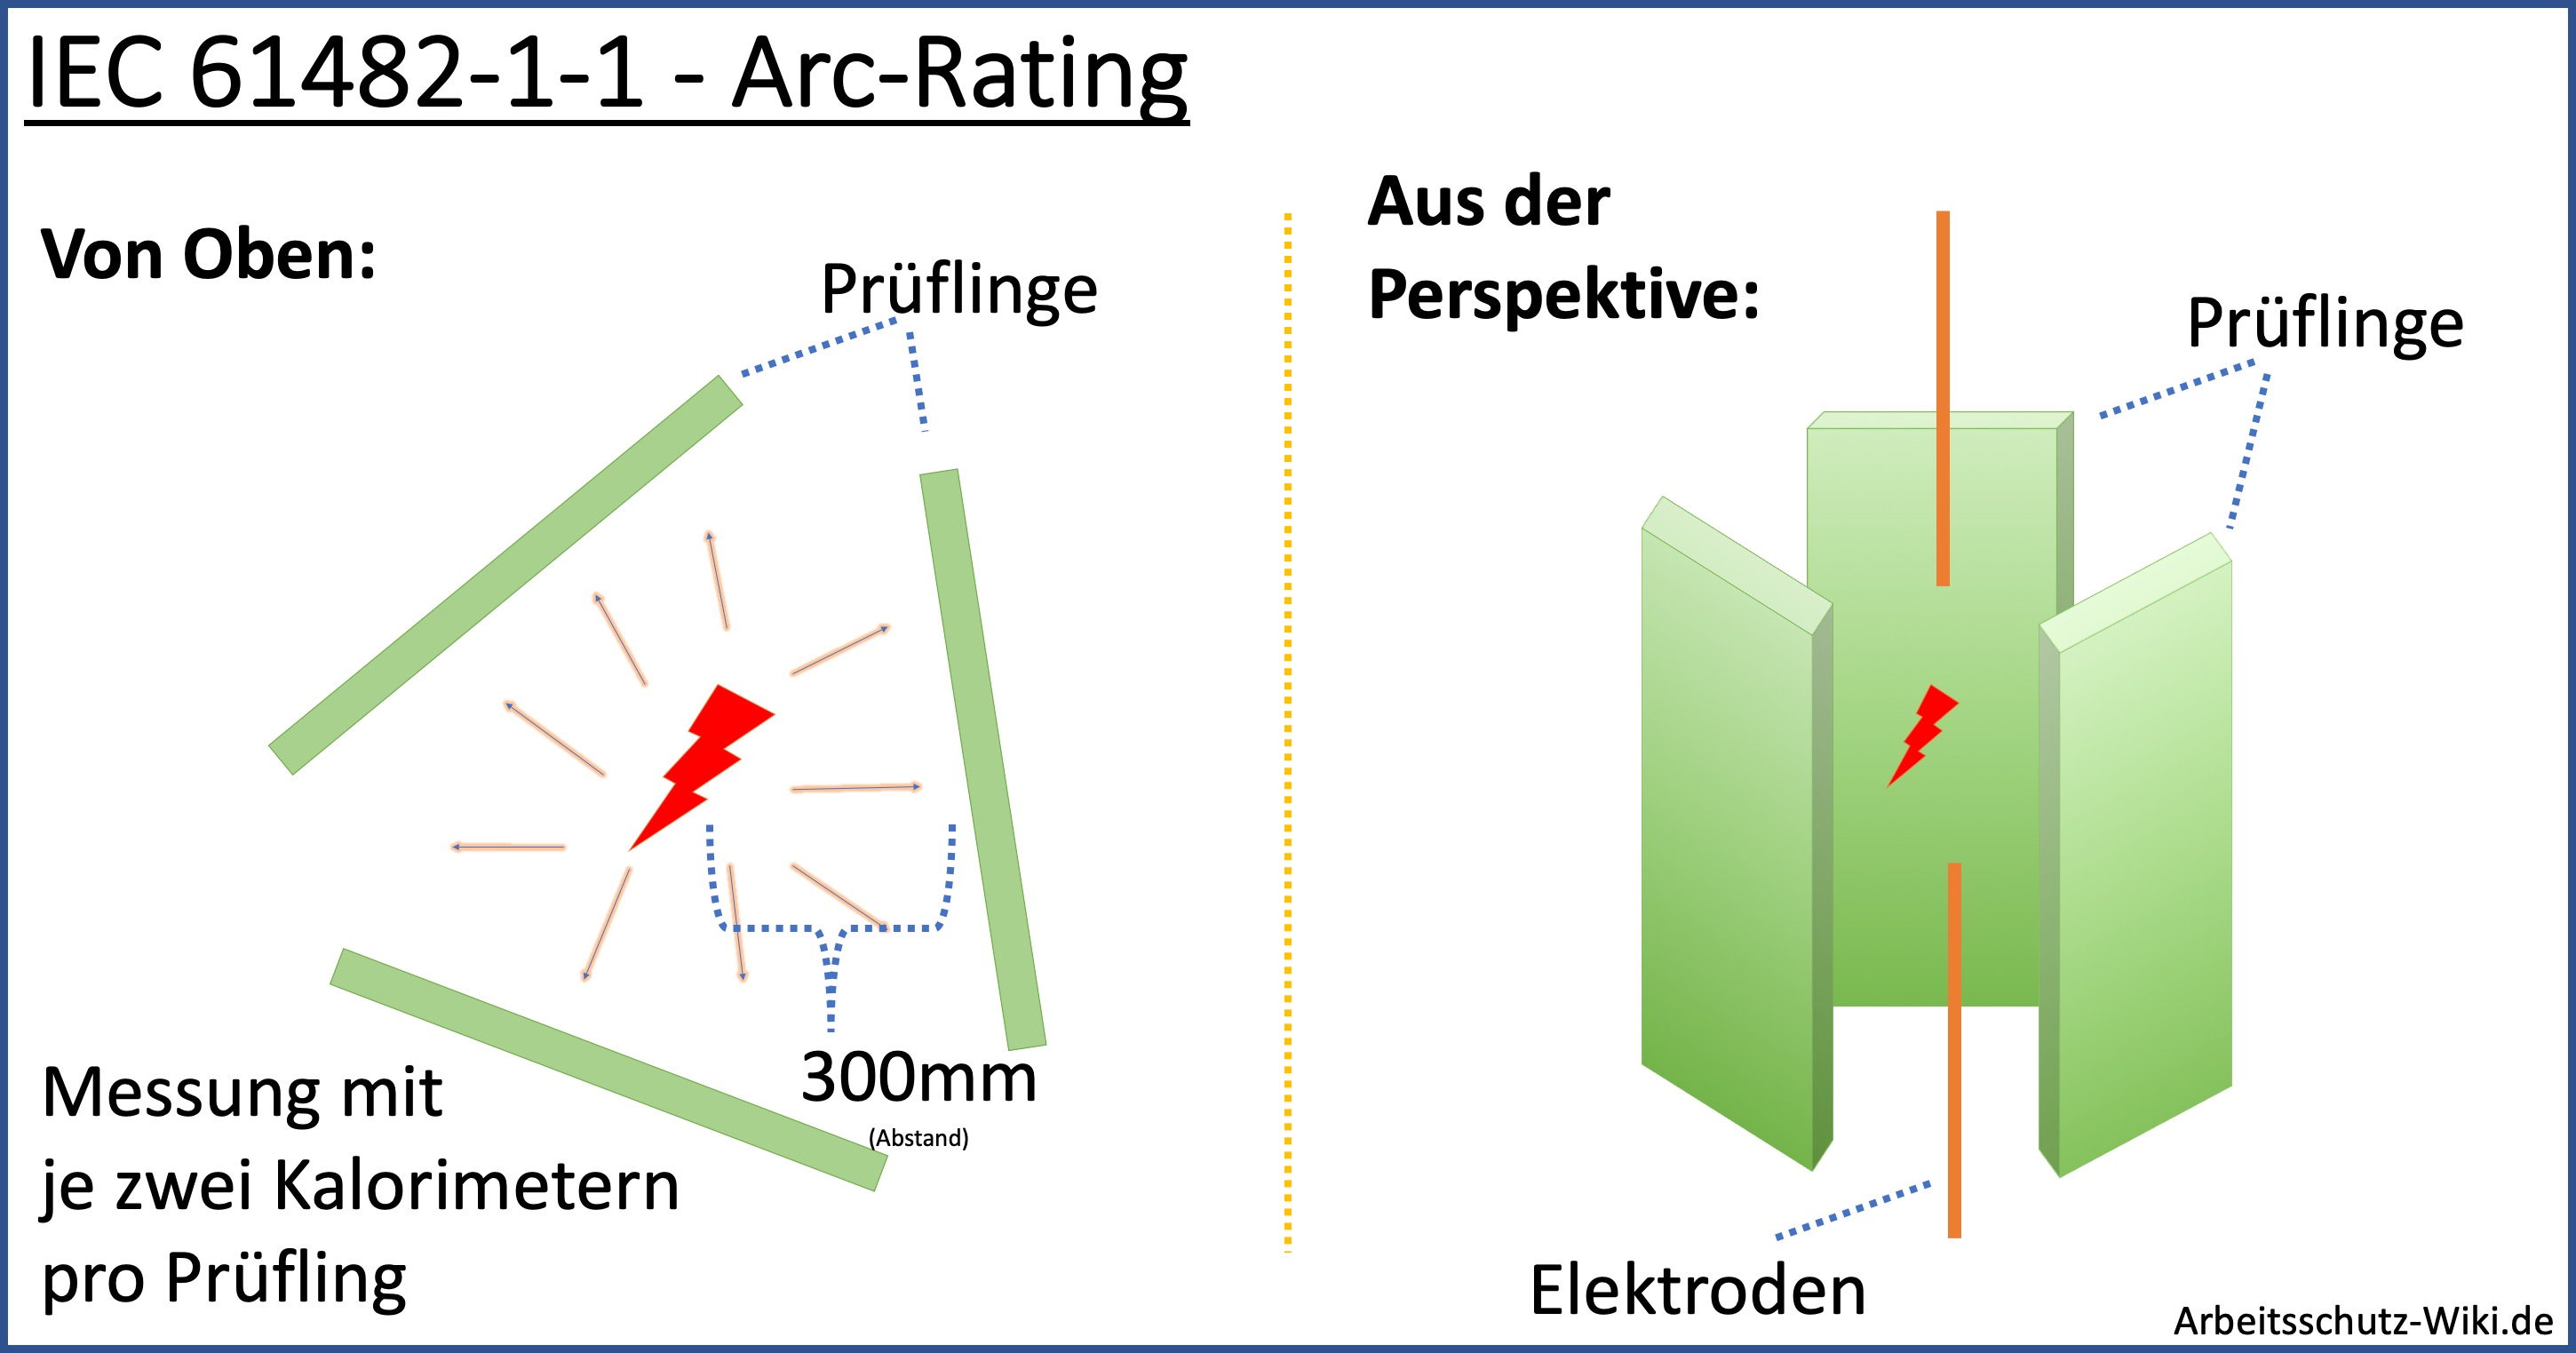 Aufbau des Prüfverfahrens nach IEC 61482-1-1 - Arc-Rating - IEC 61482-2 - Störlichtbogenschutz. Die Grafik zeigt die Anordnung der Prüflinge um den elektrischen Störlichtbogen. Die Elektroden sind vertikal angebracht.